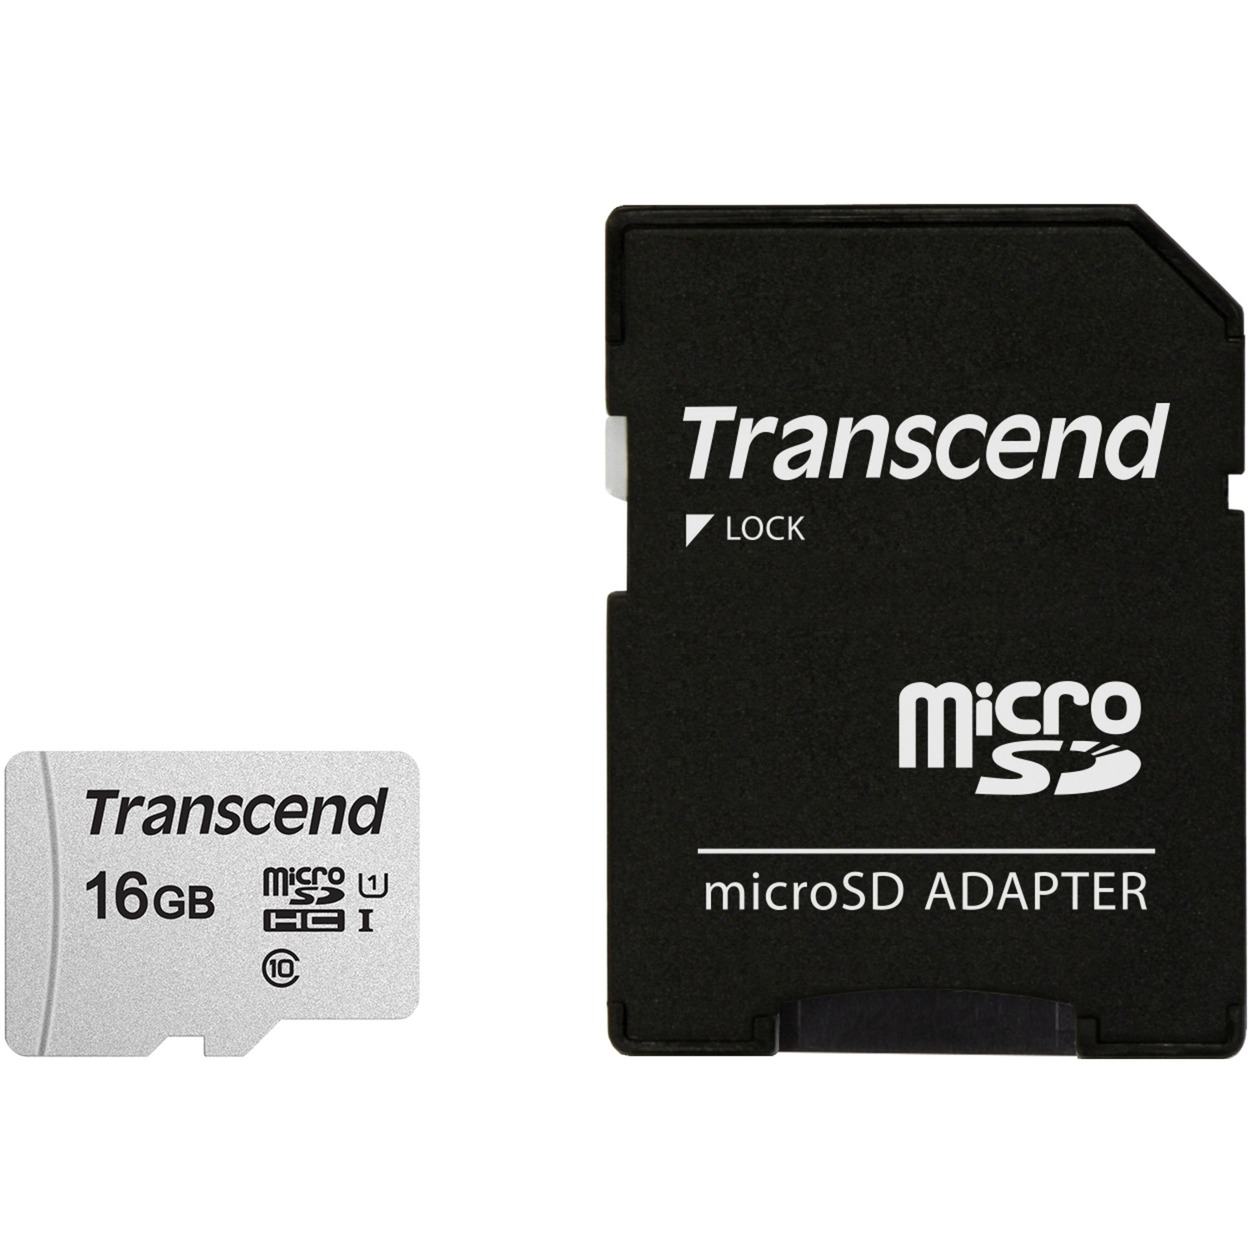 Image of Alternate - 300S 16 GB microSDHC, Speicherkarte online einkaufen bei Alternate